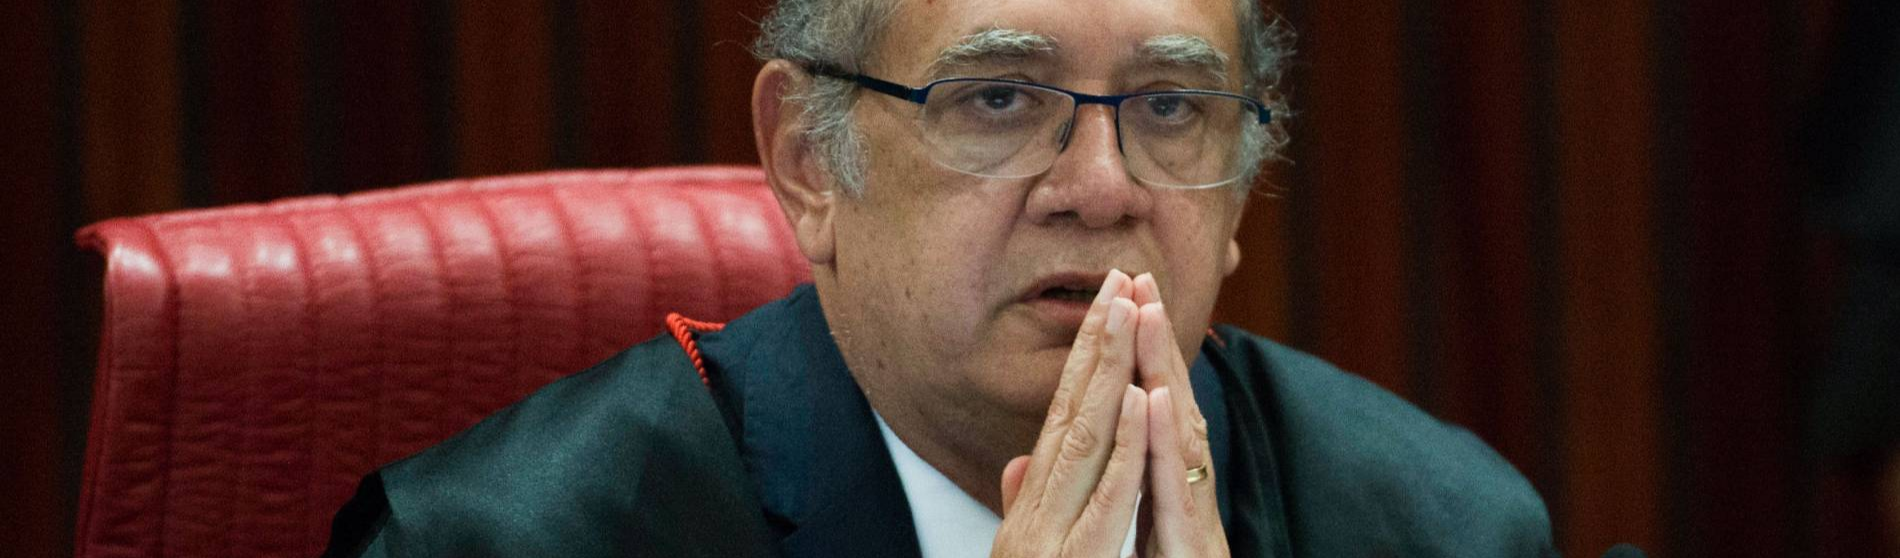 Para Gilmar Mendes procuradores de Curitiba podem ter “manipulado delações"